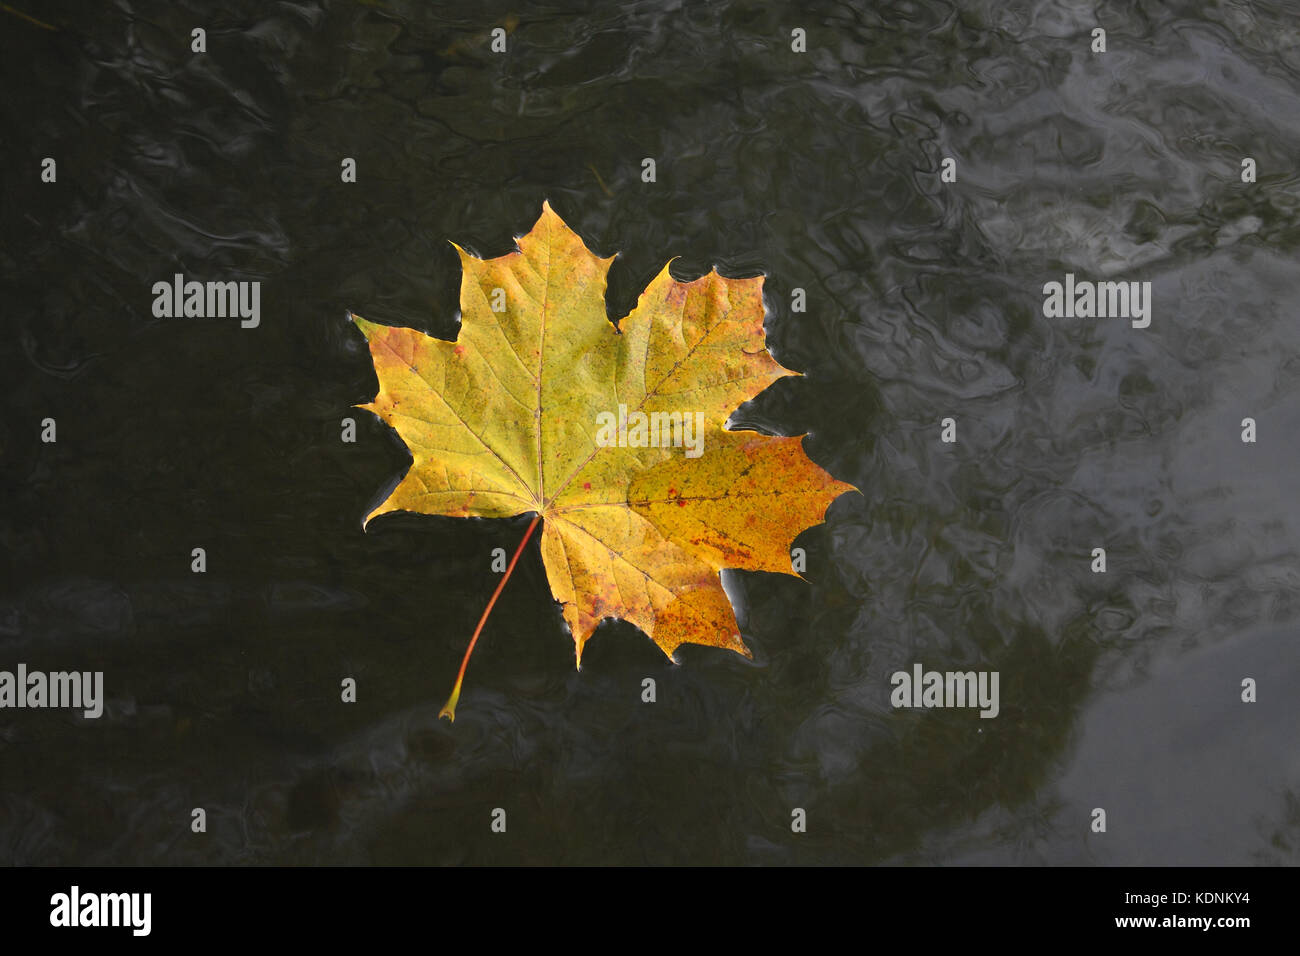 Autunno maple leaf sul buio fondo di acqua Foto Stock